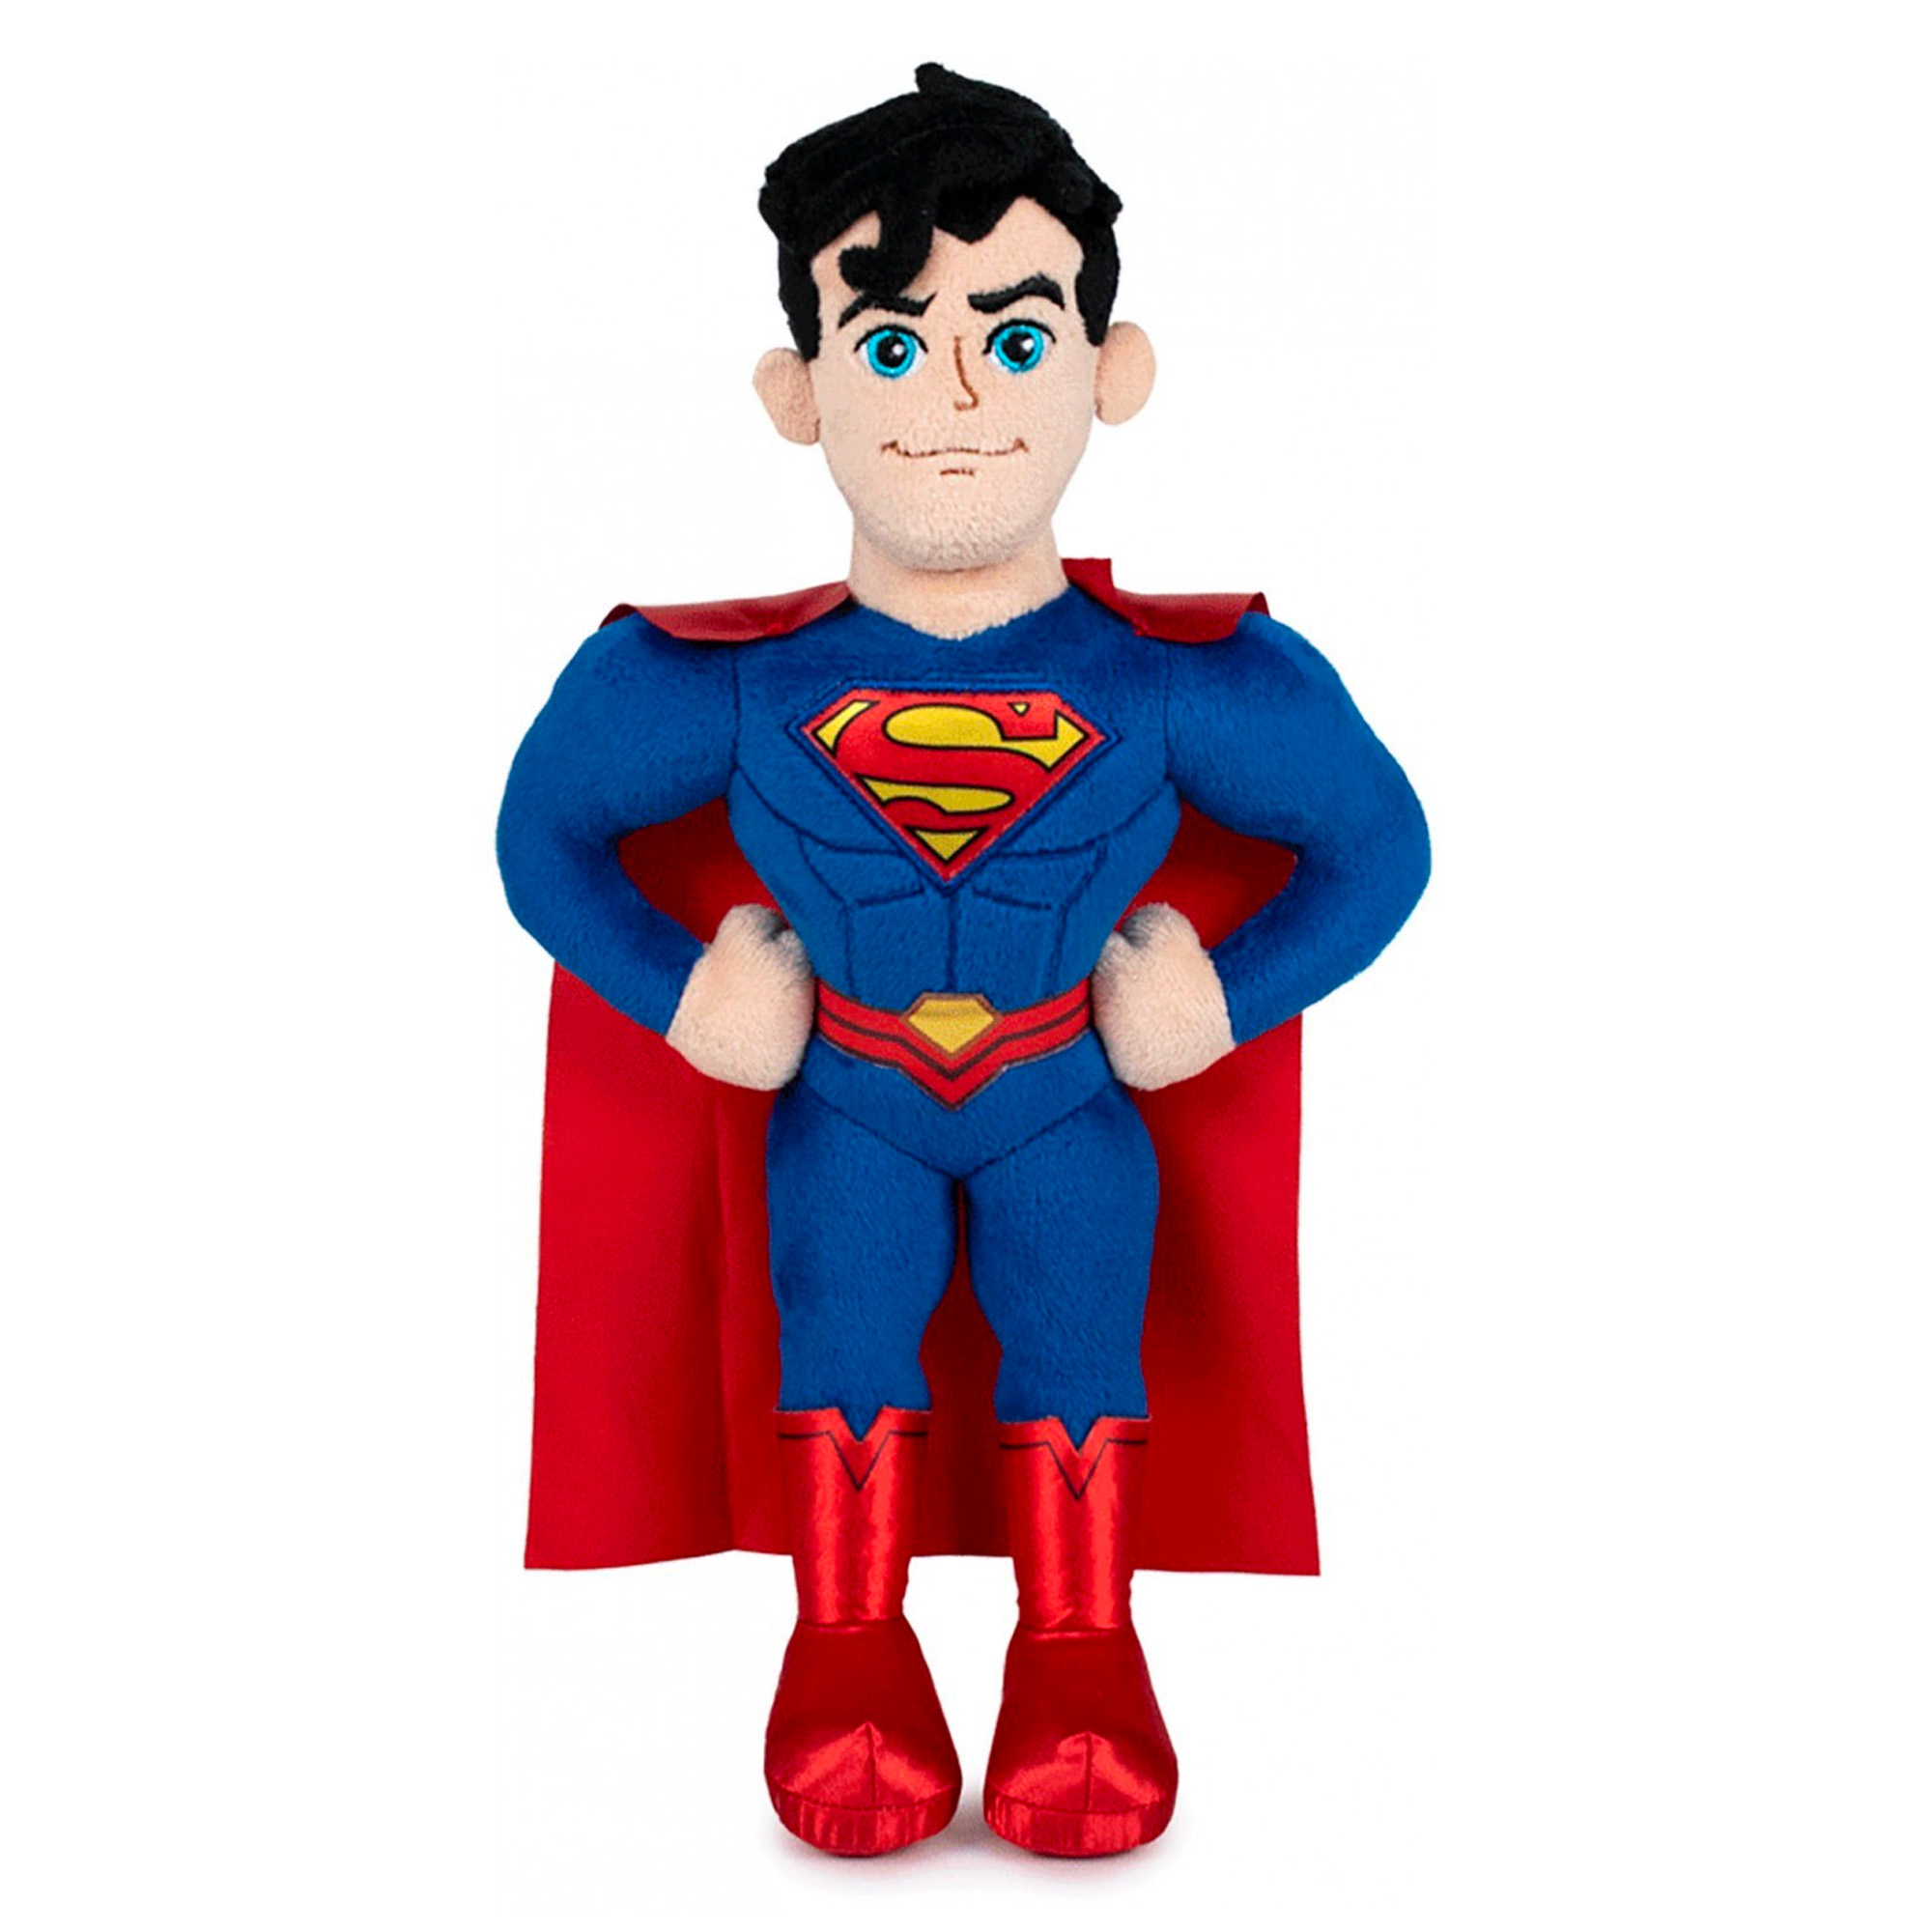 Superman Plüschfigur (32 cm) - DC Comics